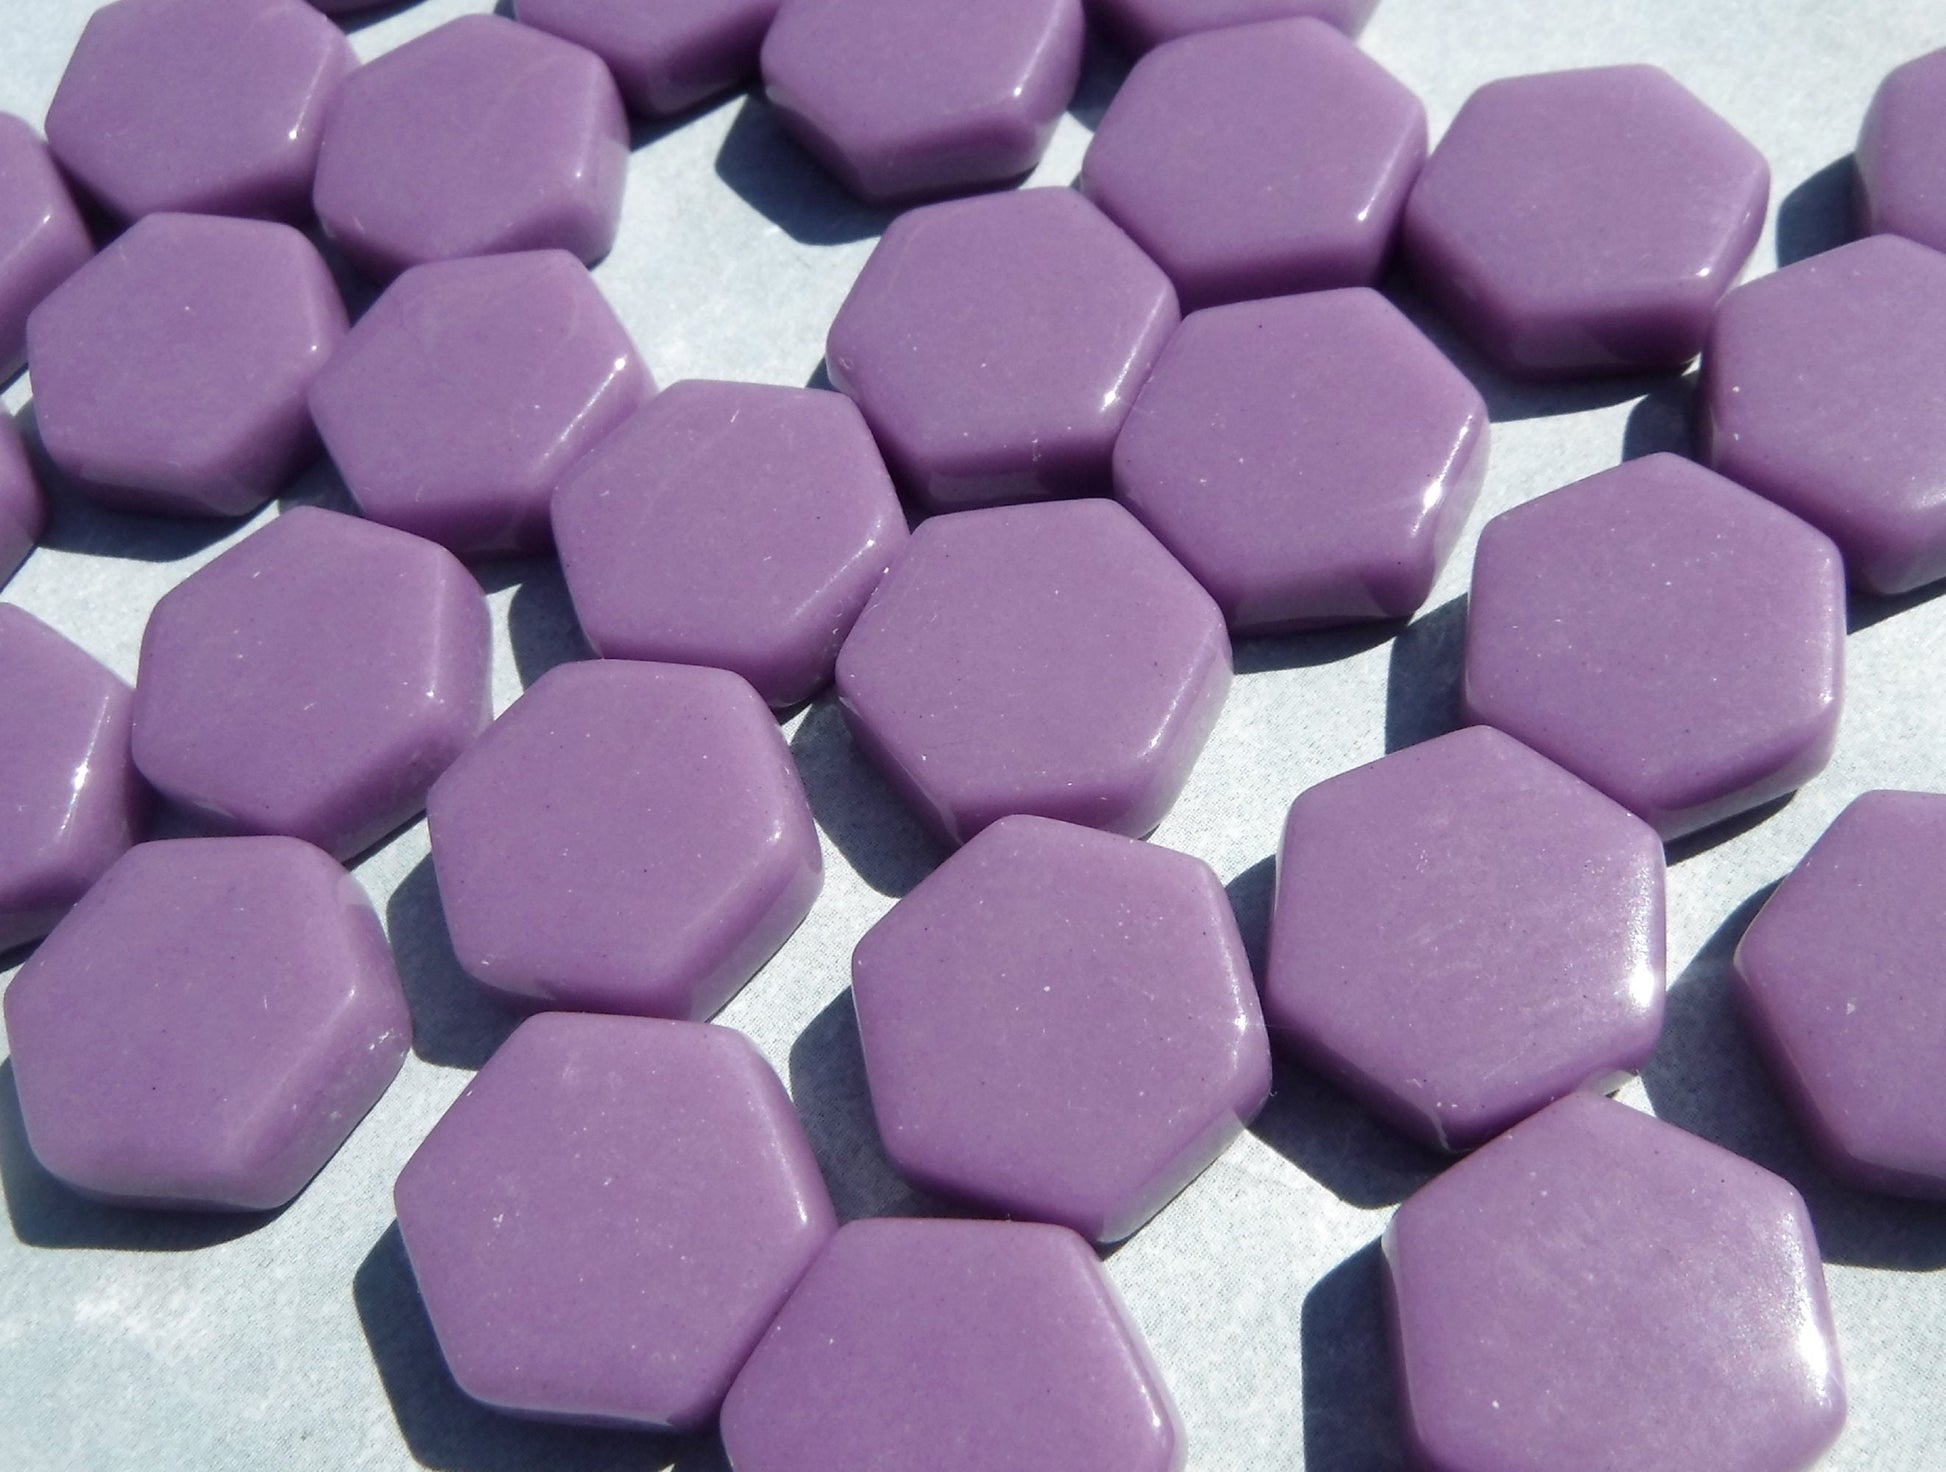 Purple Hexagon Mosaic Tiles - 15mm - 100g Opaque Glass Tiles - Dark Orchid